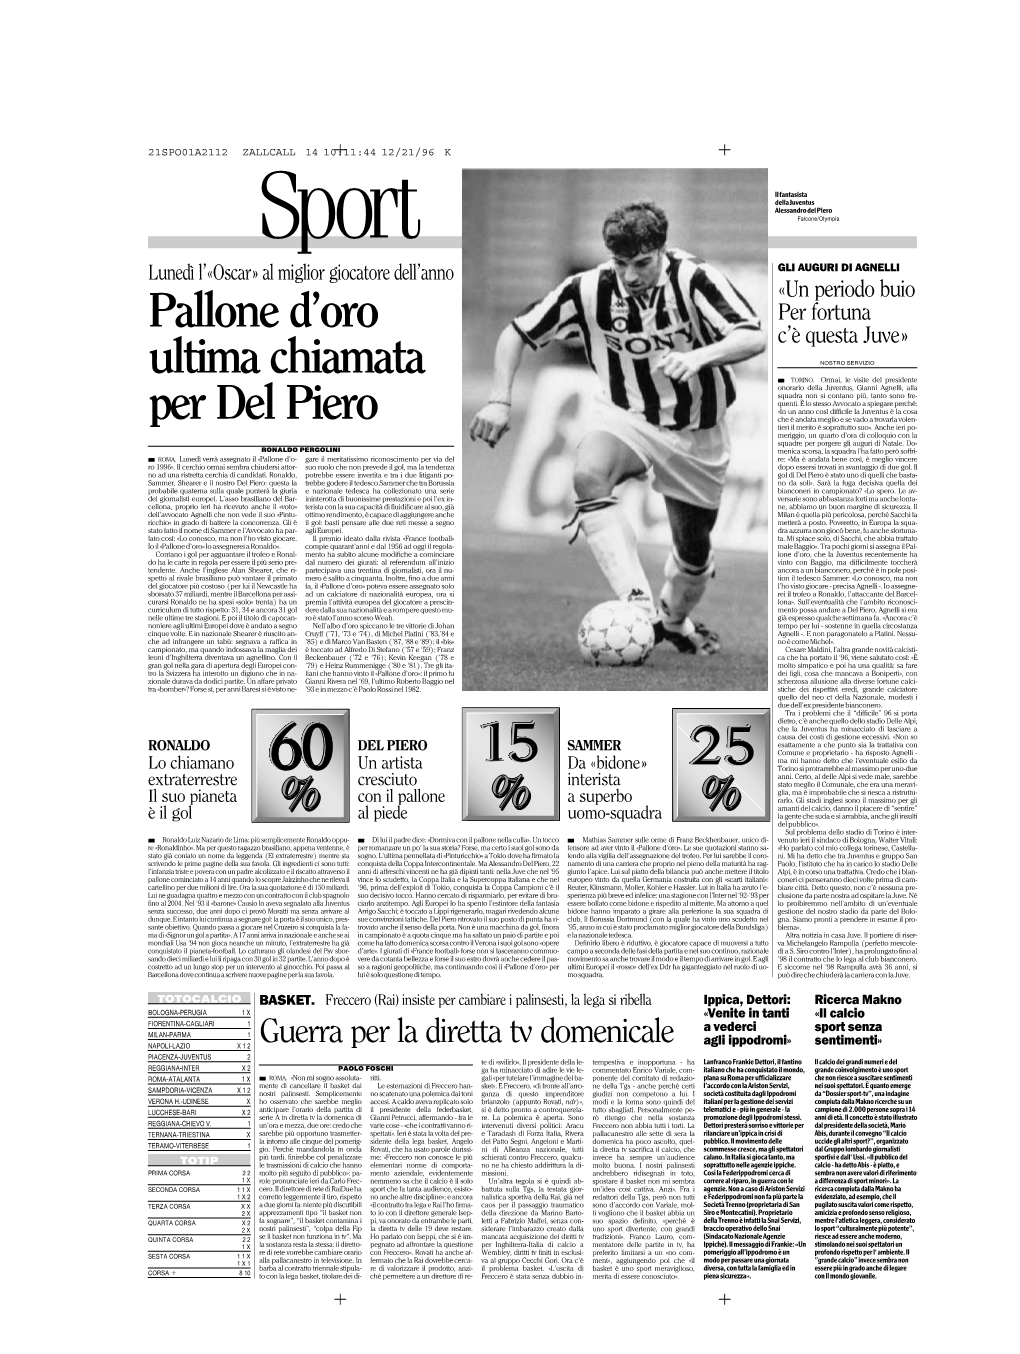 Pallone D'oro Ultima Chiamata Per Del Piero